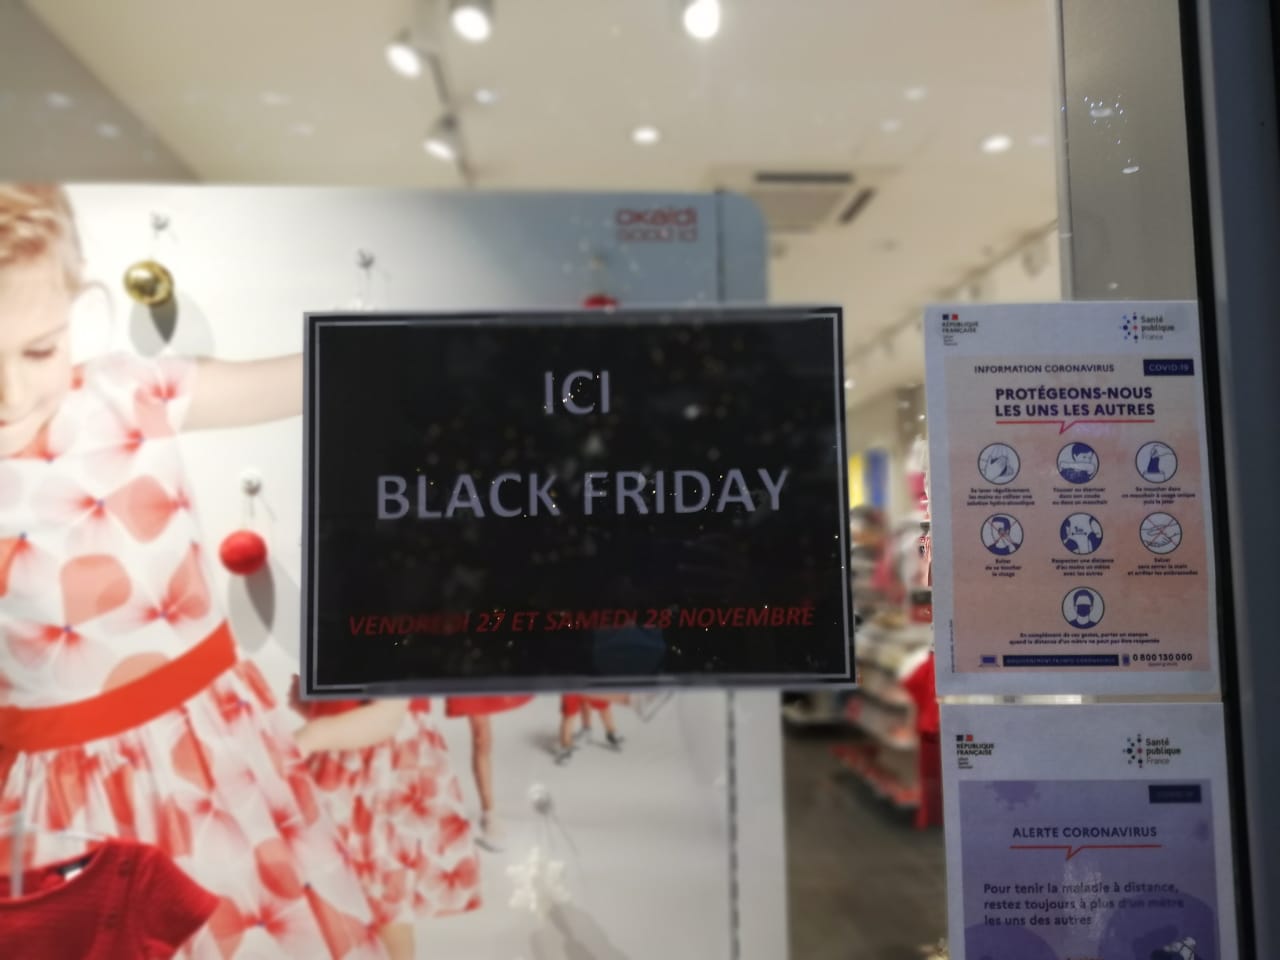     Des commerçants maintiennent leur Black Friday malgré un contexte économique compliqué 

